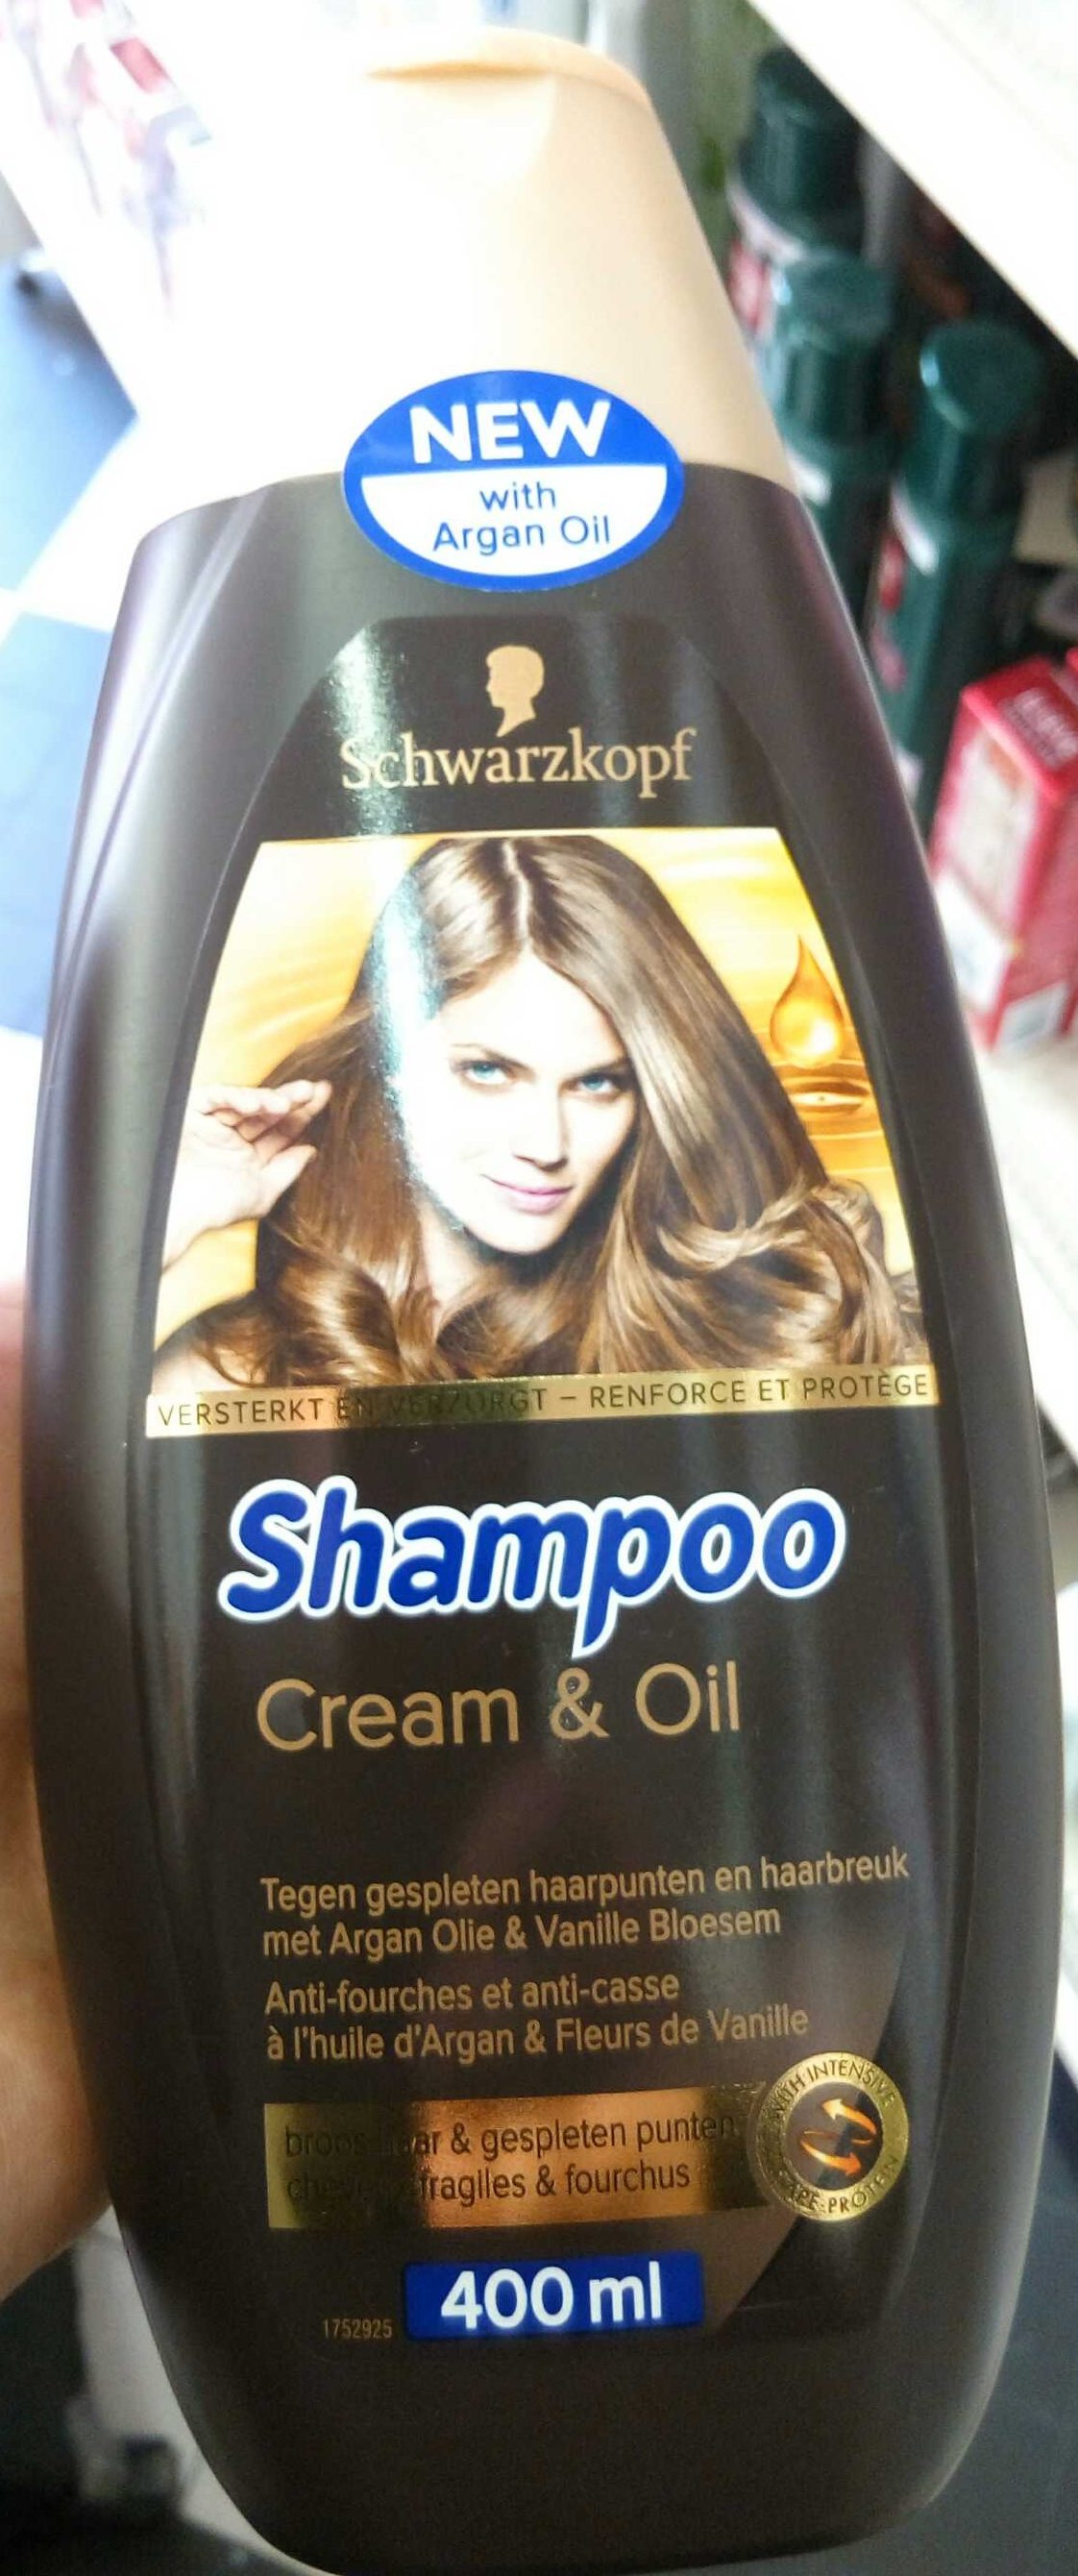 Shampoo Cream & Oil - Tuote - fr